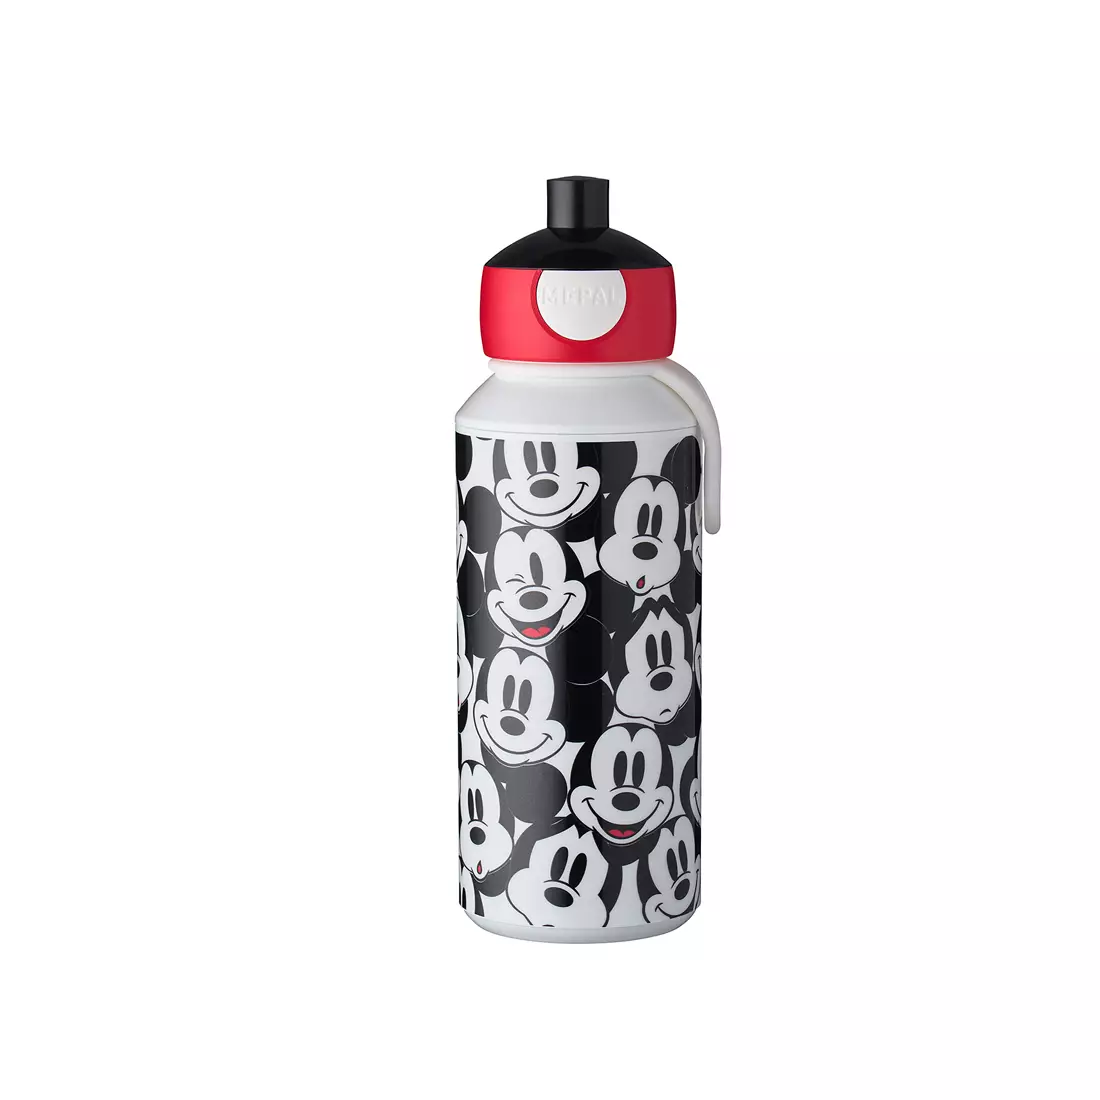 MEPAl CAMPUS POP-UP wasserflasche für kinder 400 ml, mickey mouse